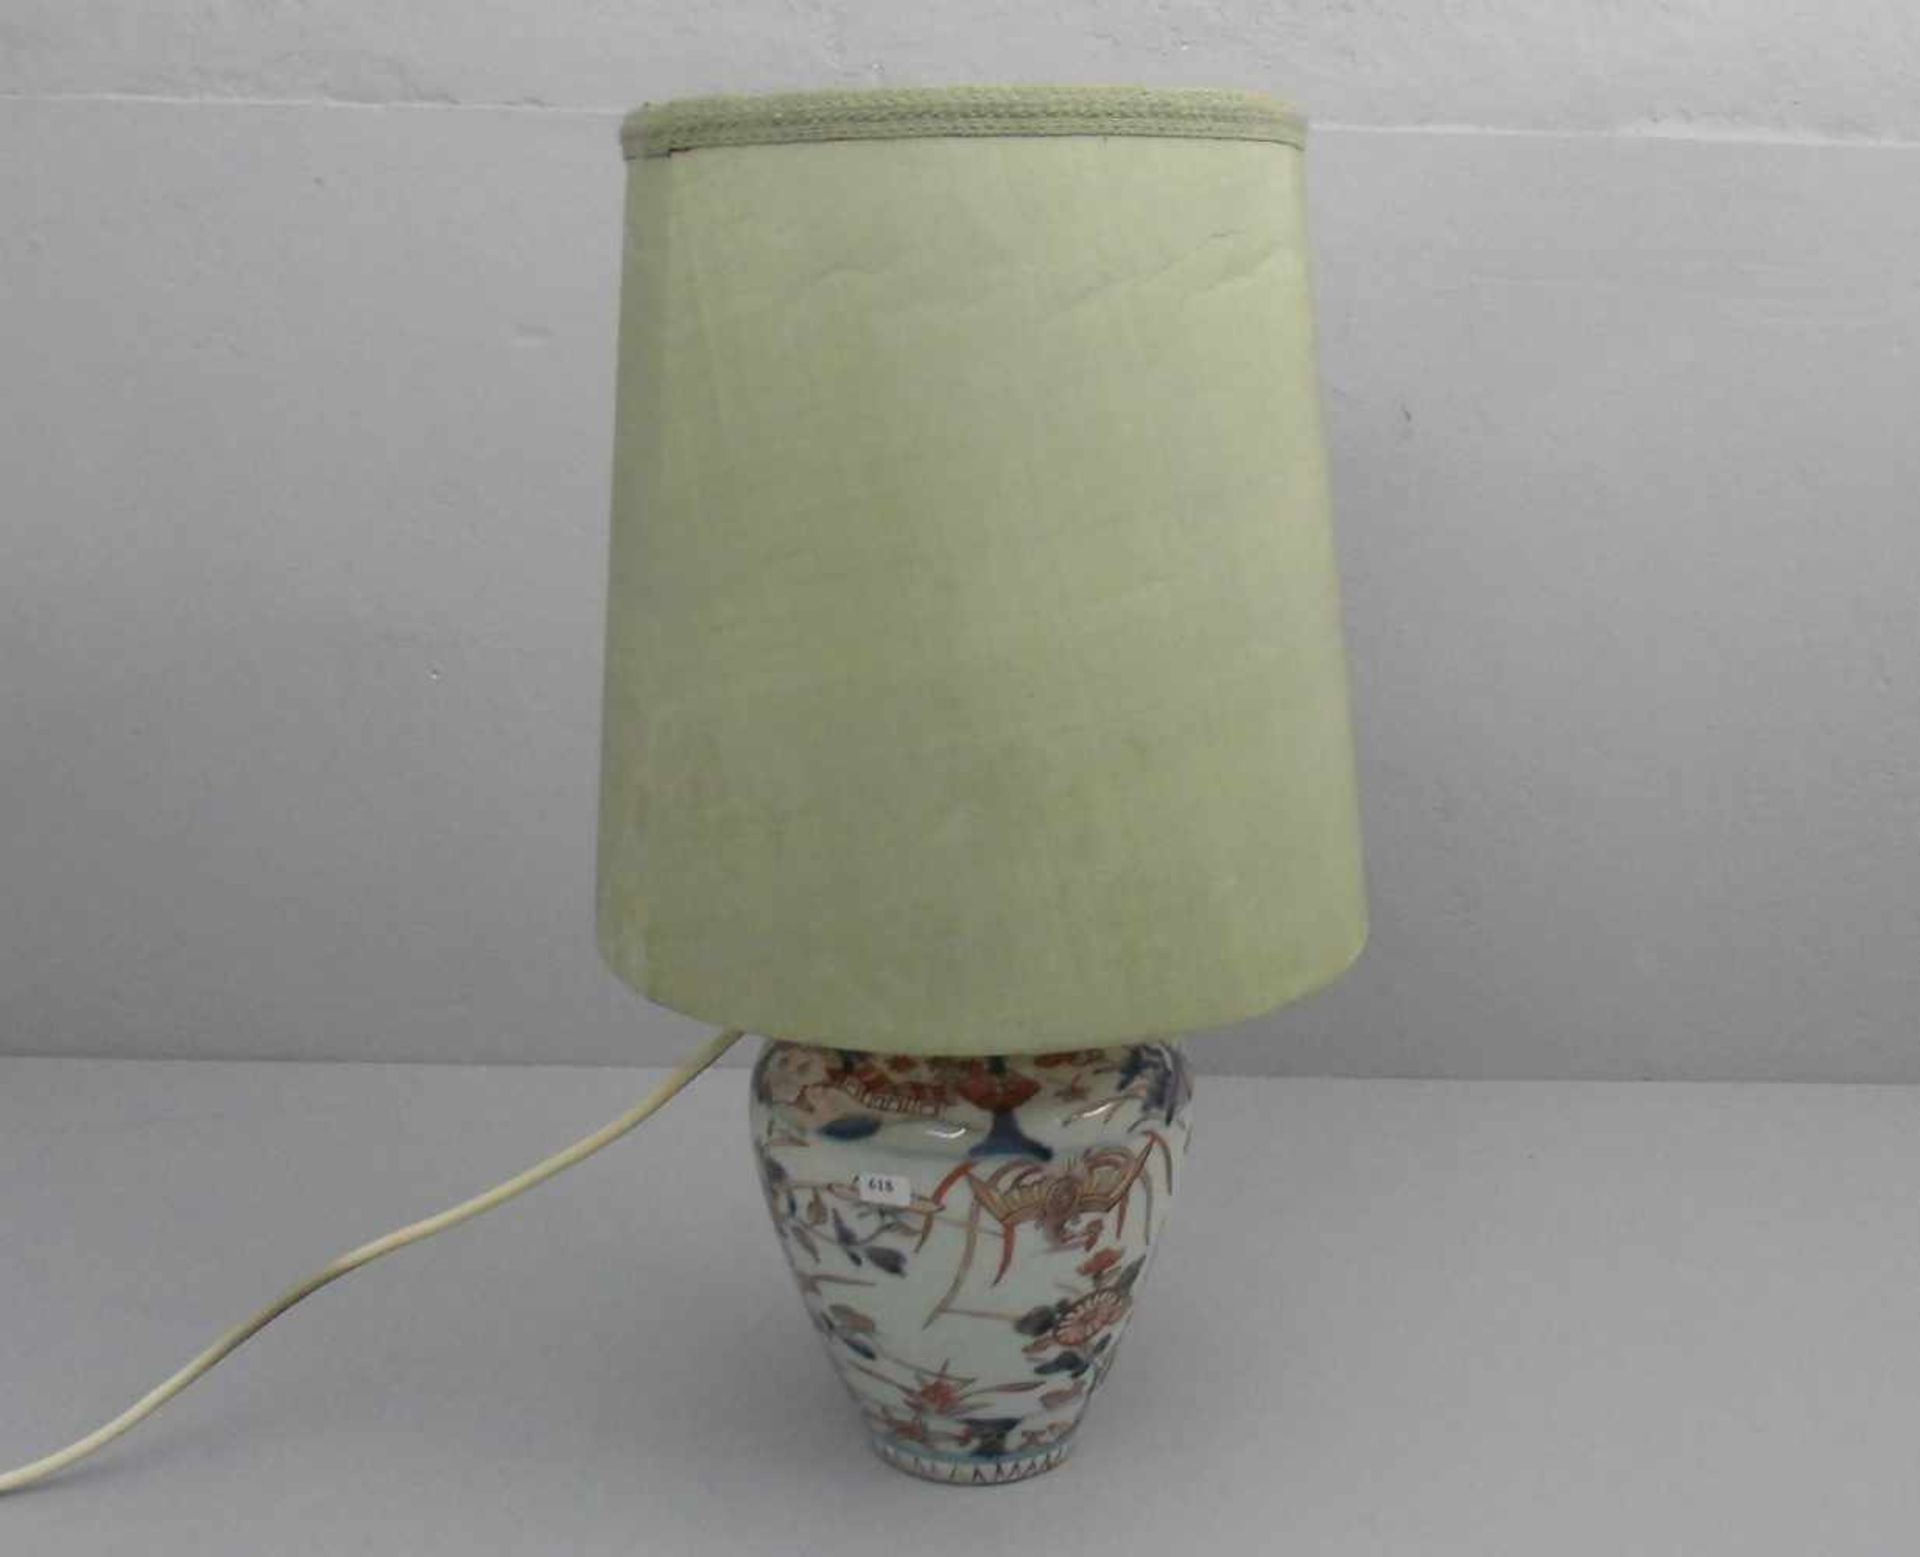 LAMPE / TISCHLAMPE MIT VASENFUSS, einflammig elektrifiziert. Satsuma - Vase in Balusterform mit